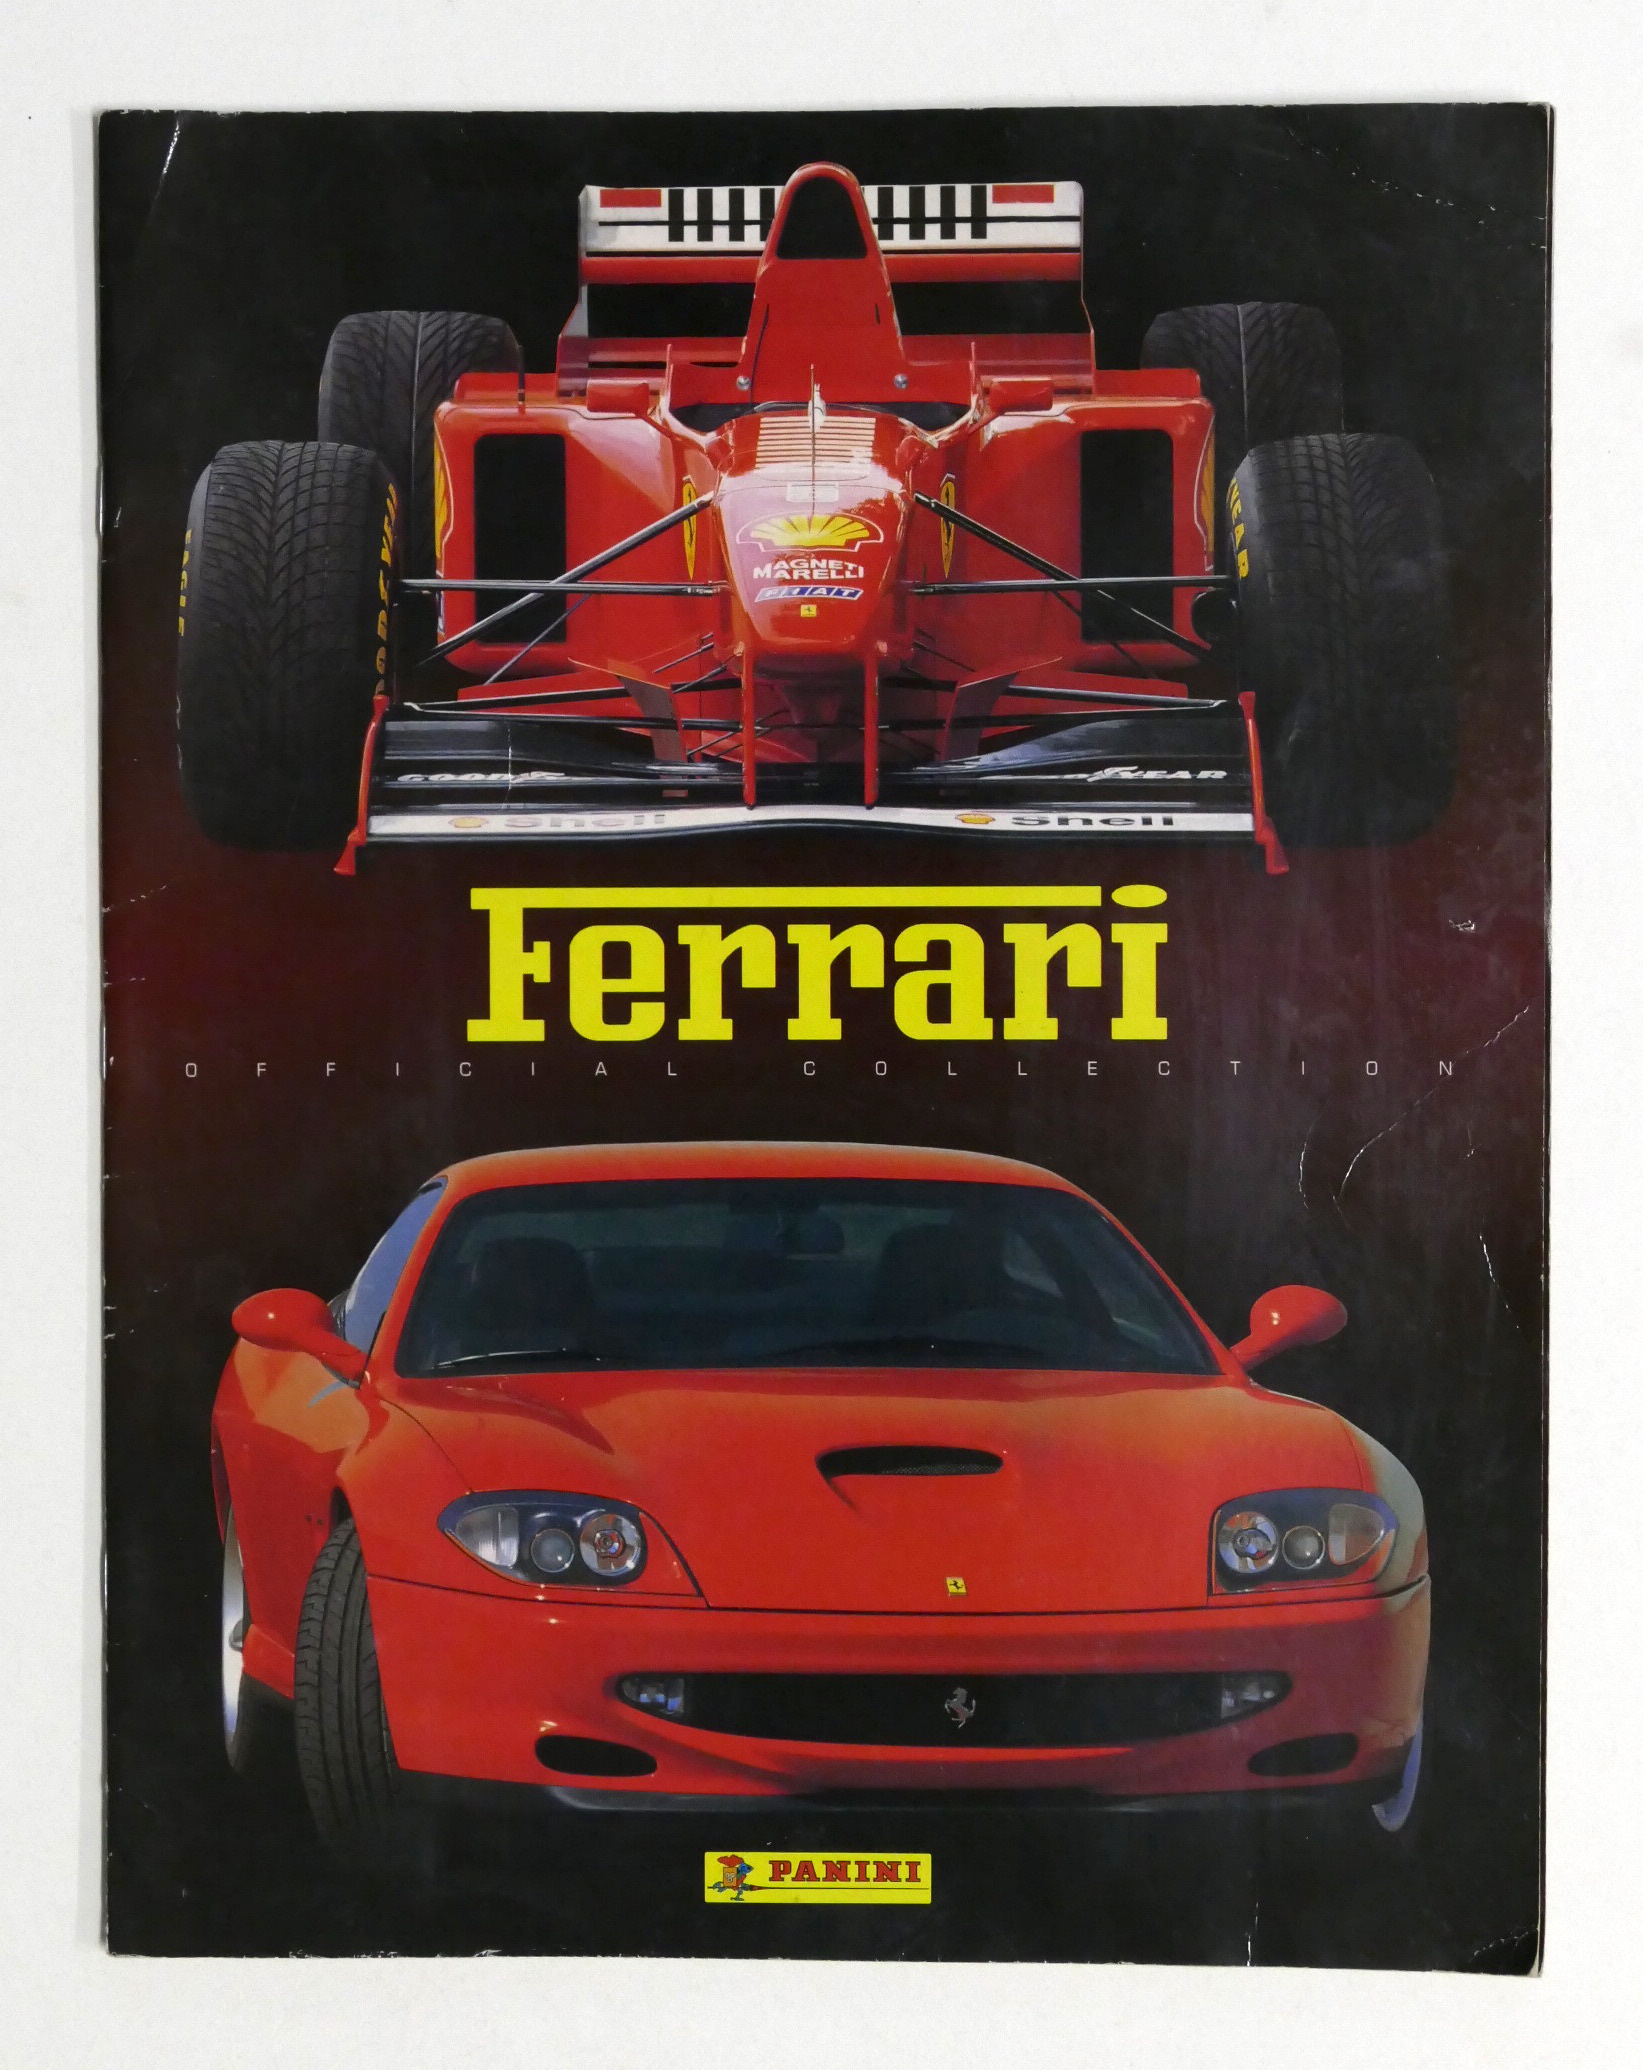 Album Figurine Panini - Ferrari Official Collection 1947 - 1997 ...